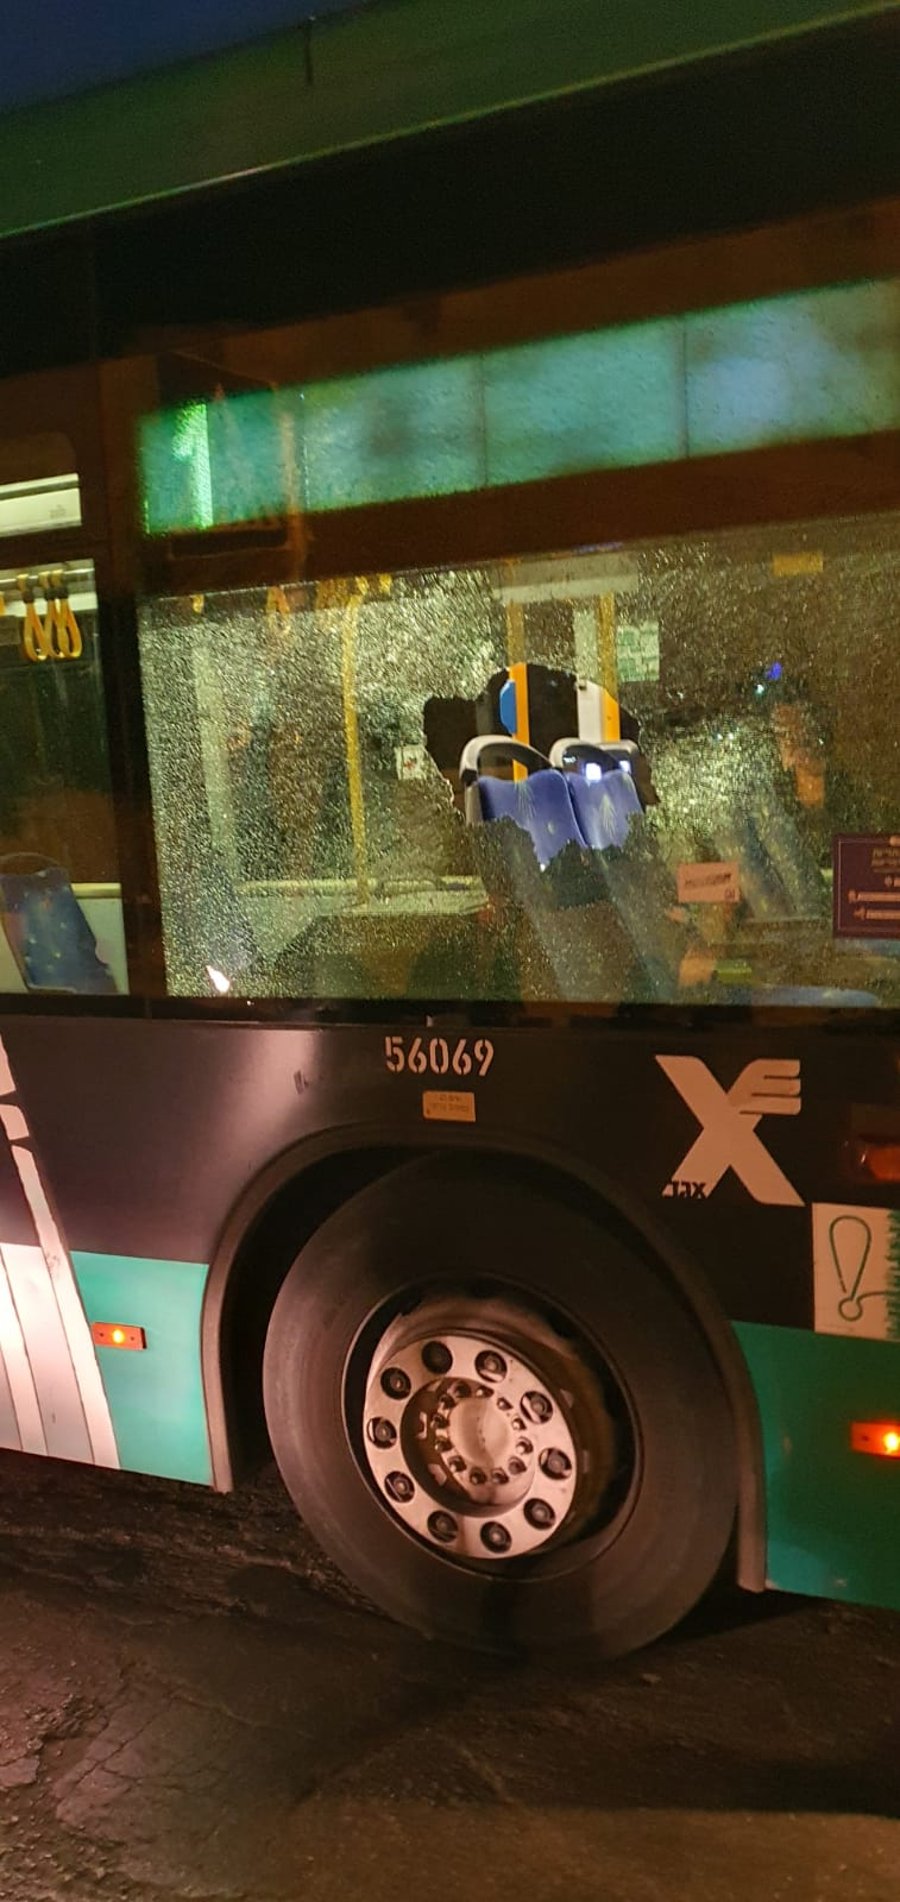 שני נערים ערבים נעצרו בחשד שיידו אבנים על אוטובוס